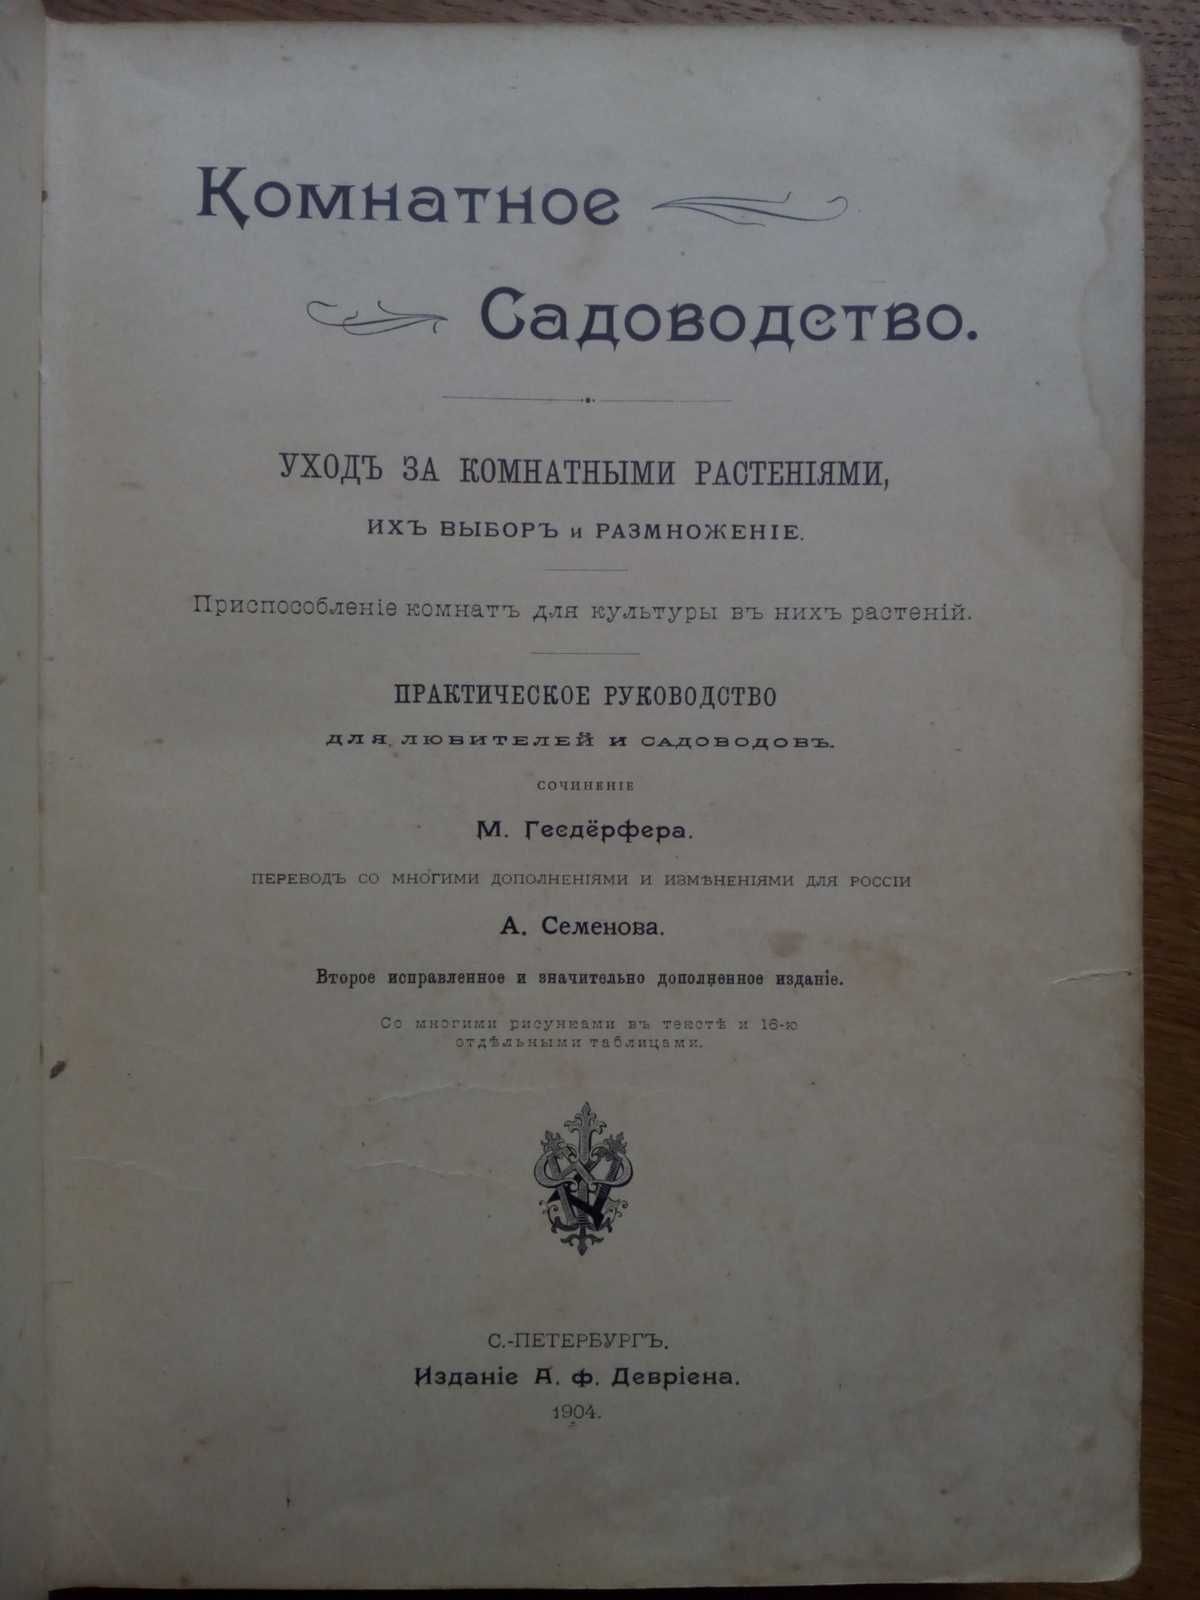 Комнатное садоводство 1904г. Практическое руководство с иллюстрациями!